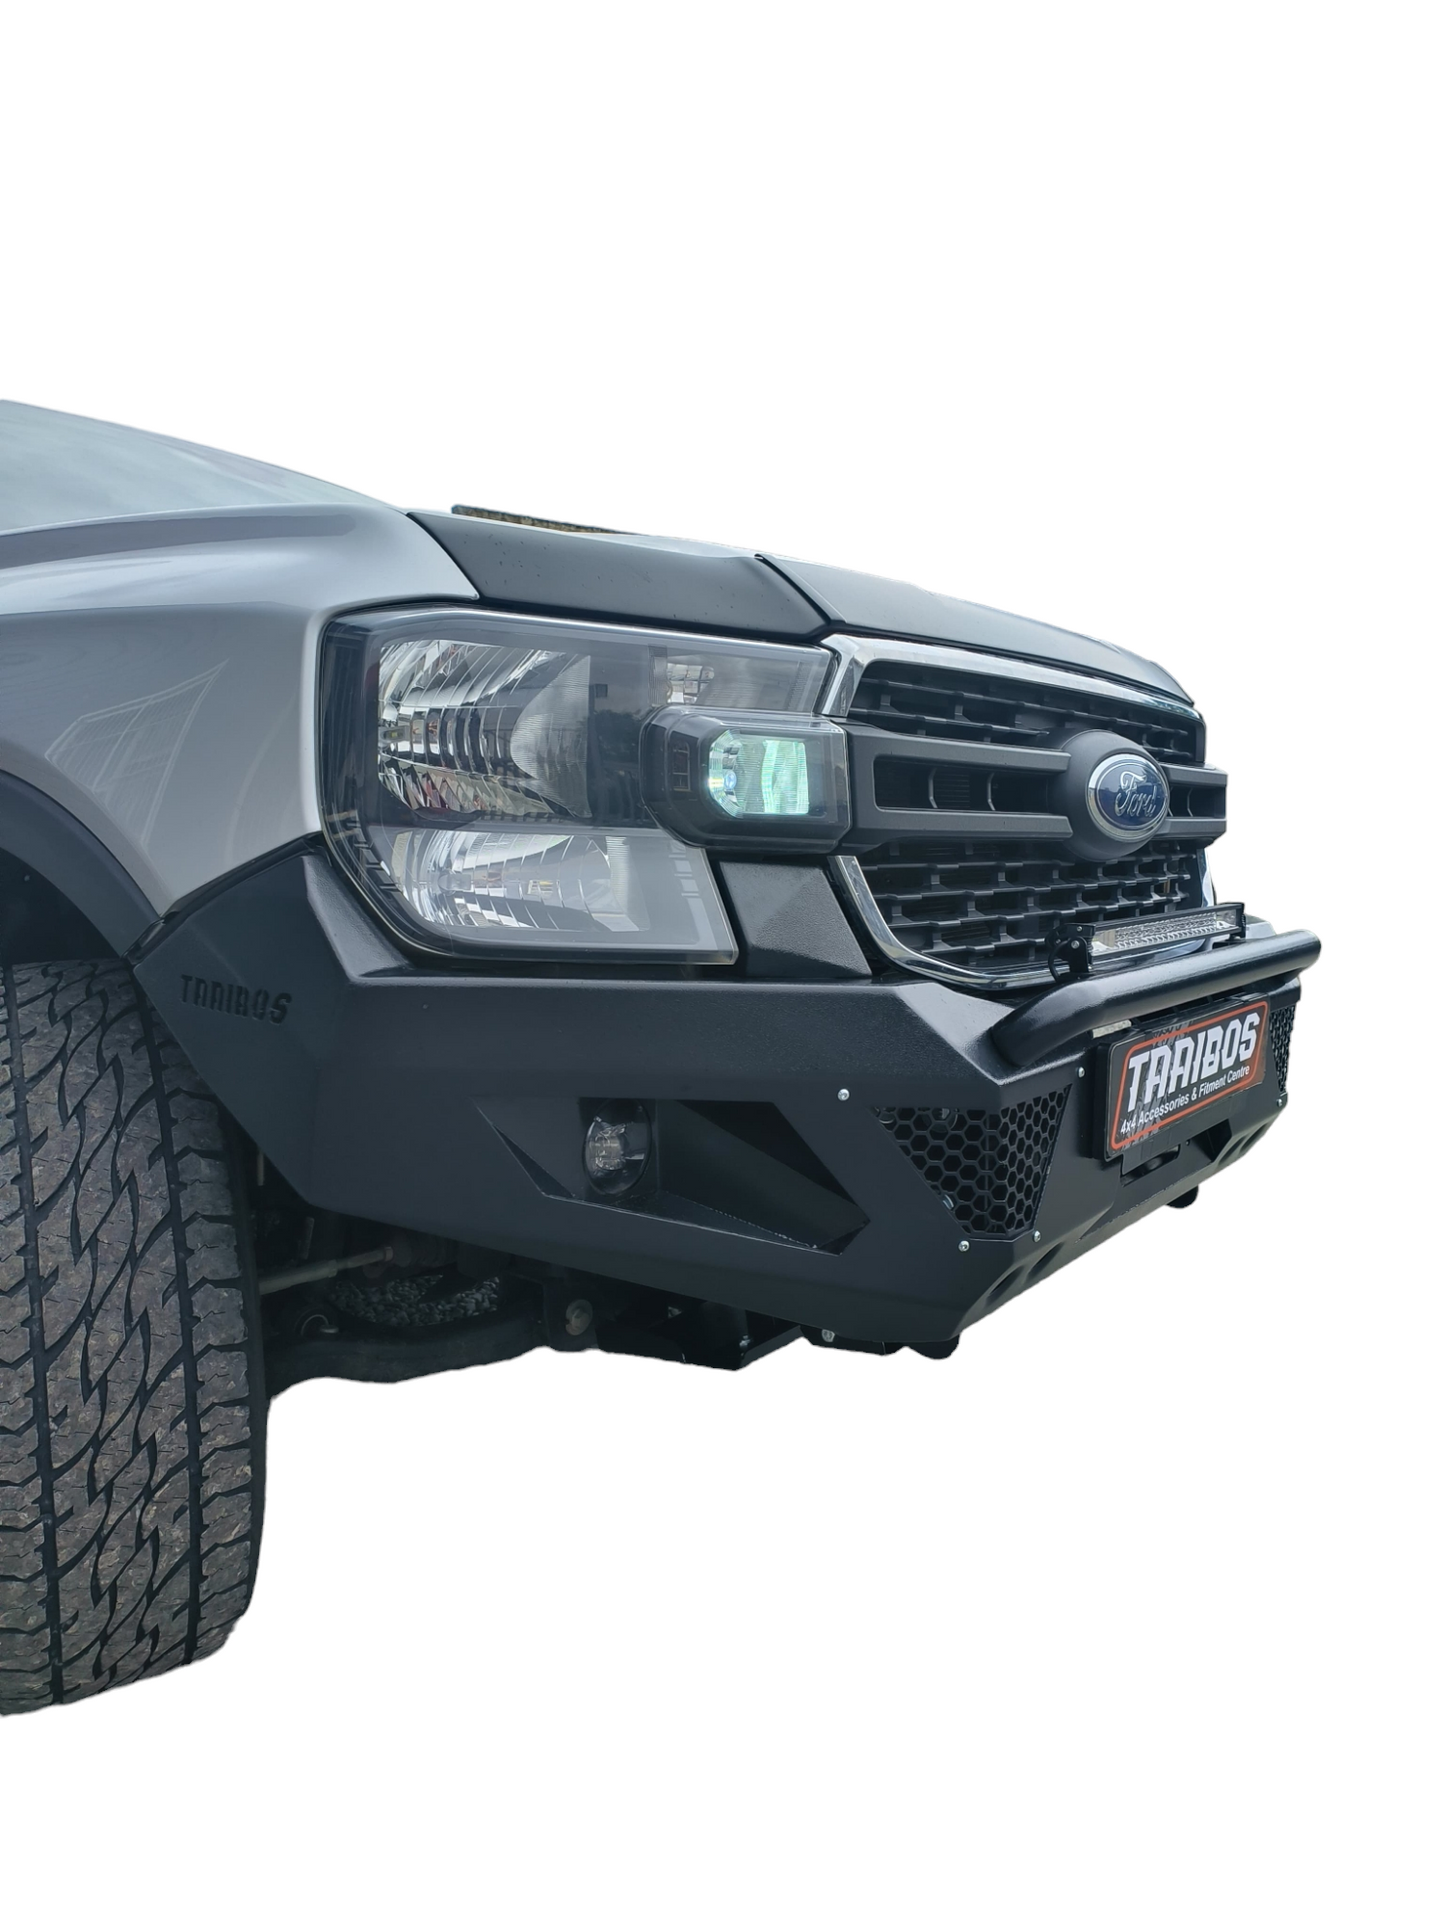 2023 next gen Ford Ranger front replacement bumper